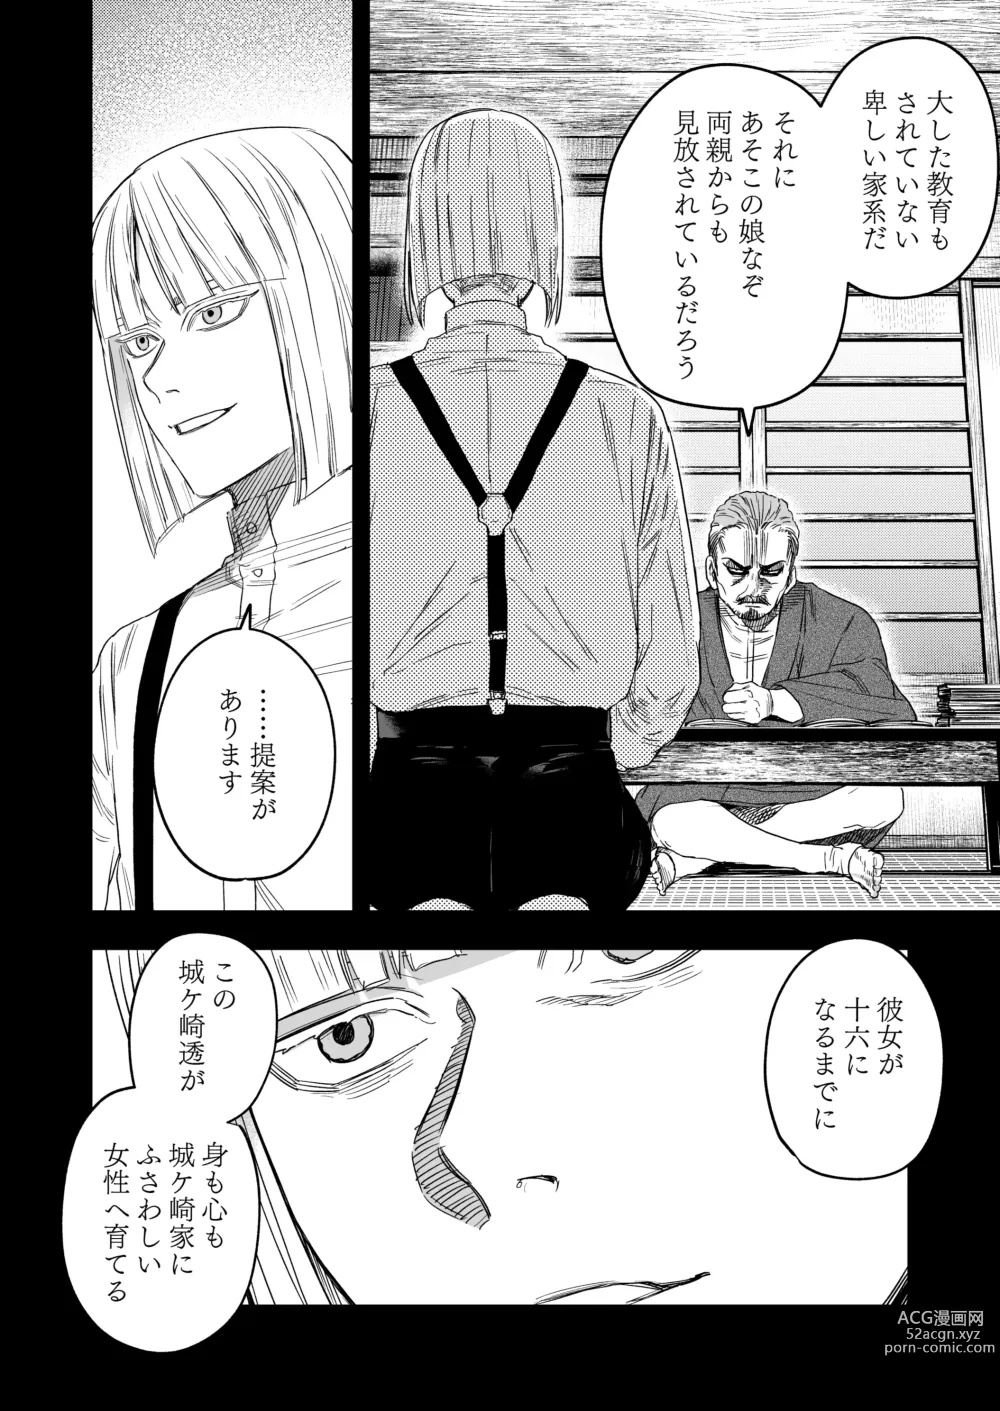 Page 43 of doujinshi Hachiroku Sou - Ieori to Hana Katajikena no Yome